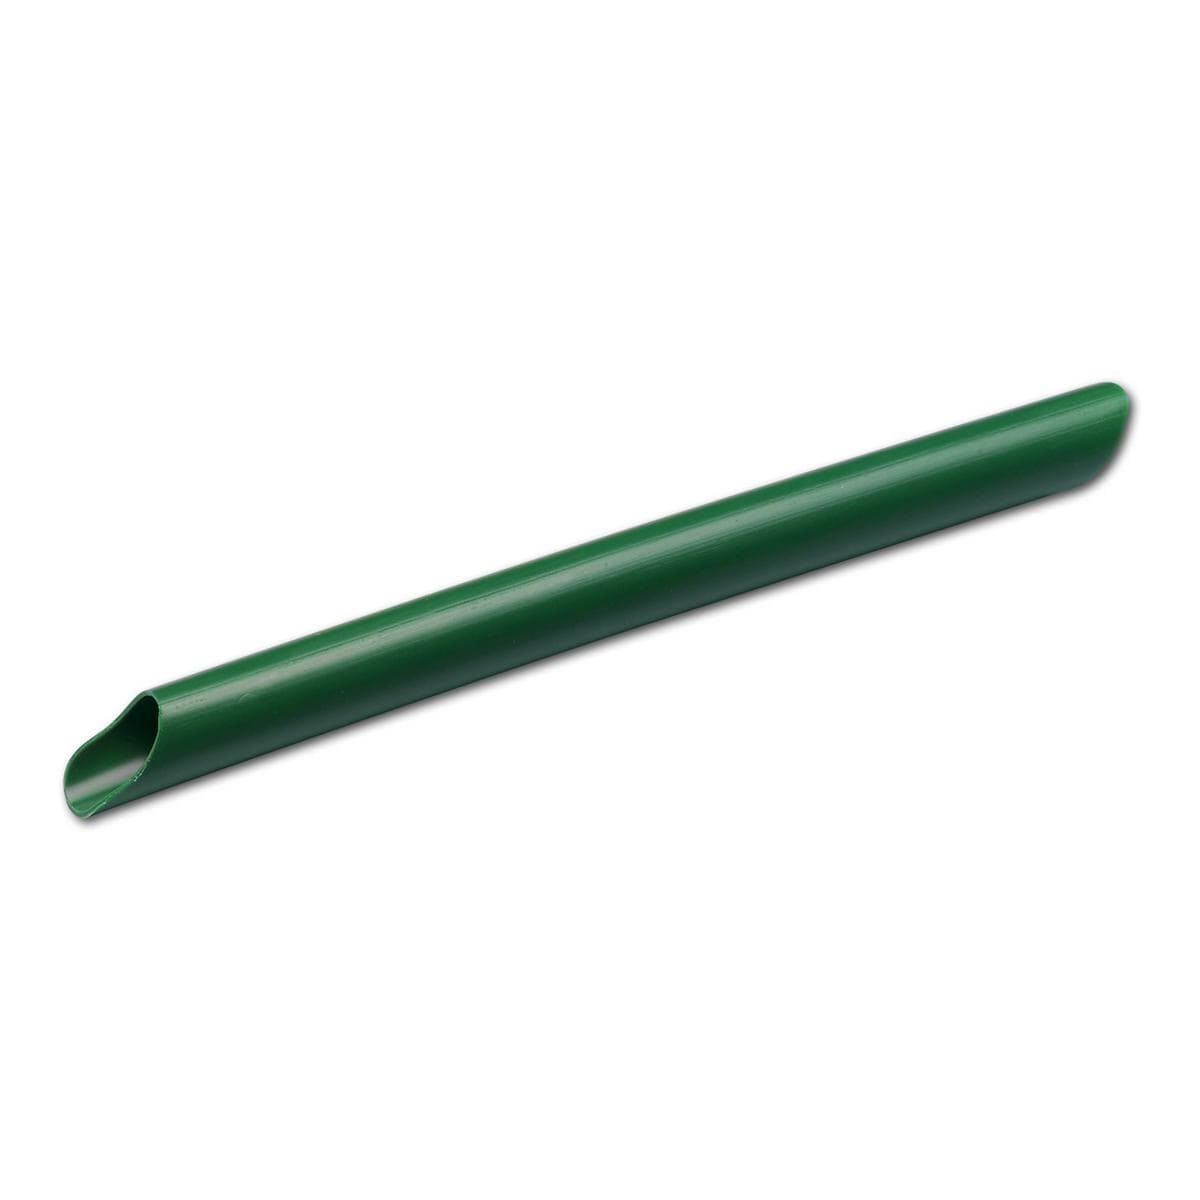 Hygovac® - ohne seitliche Öffnungen, Länge 140 mm - Grün, Packung 100 Stück